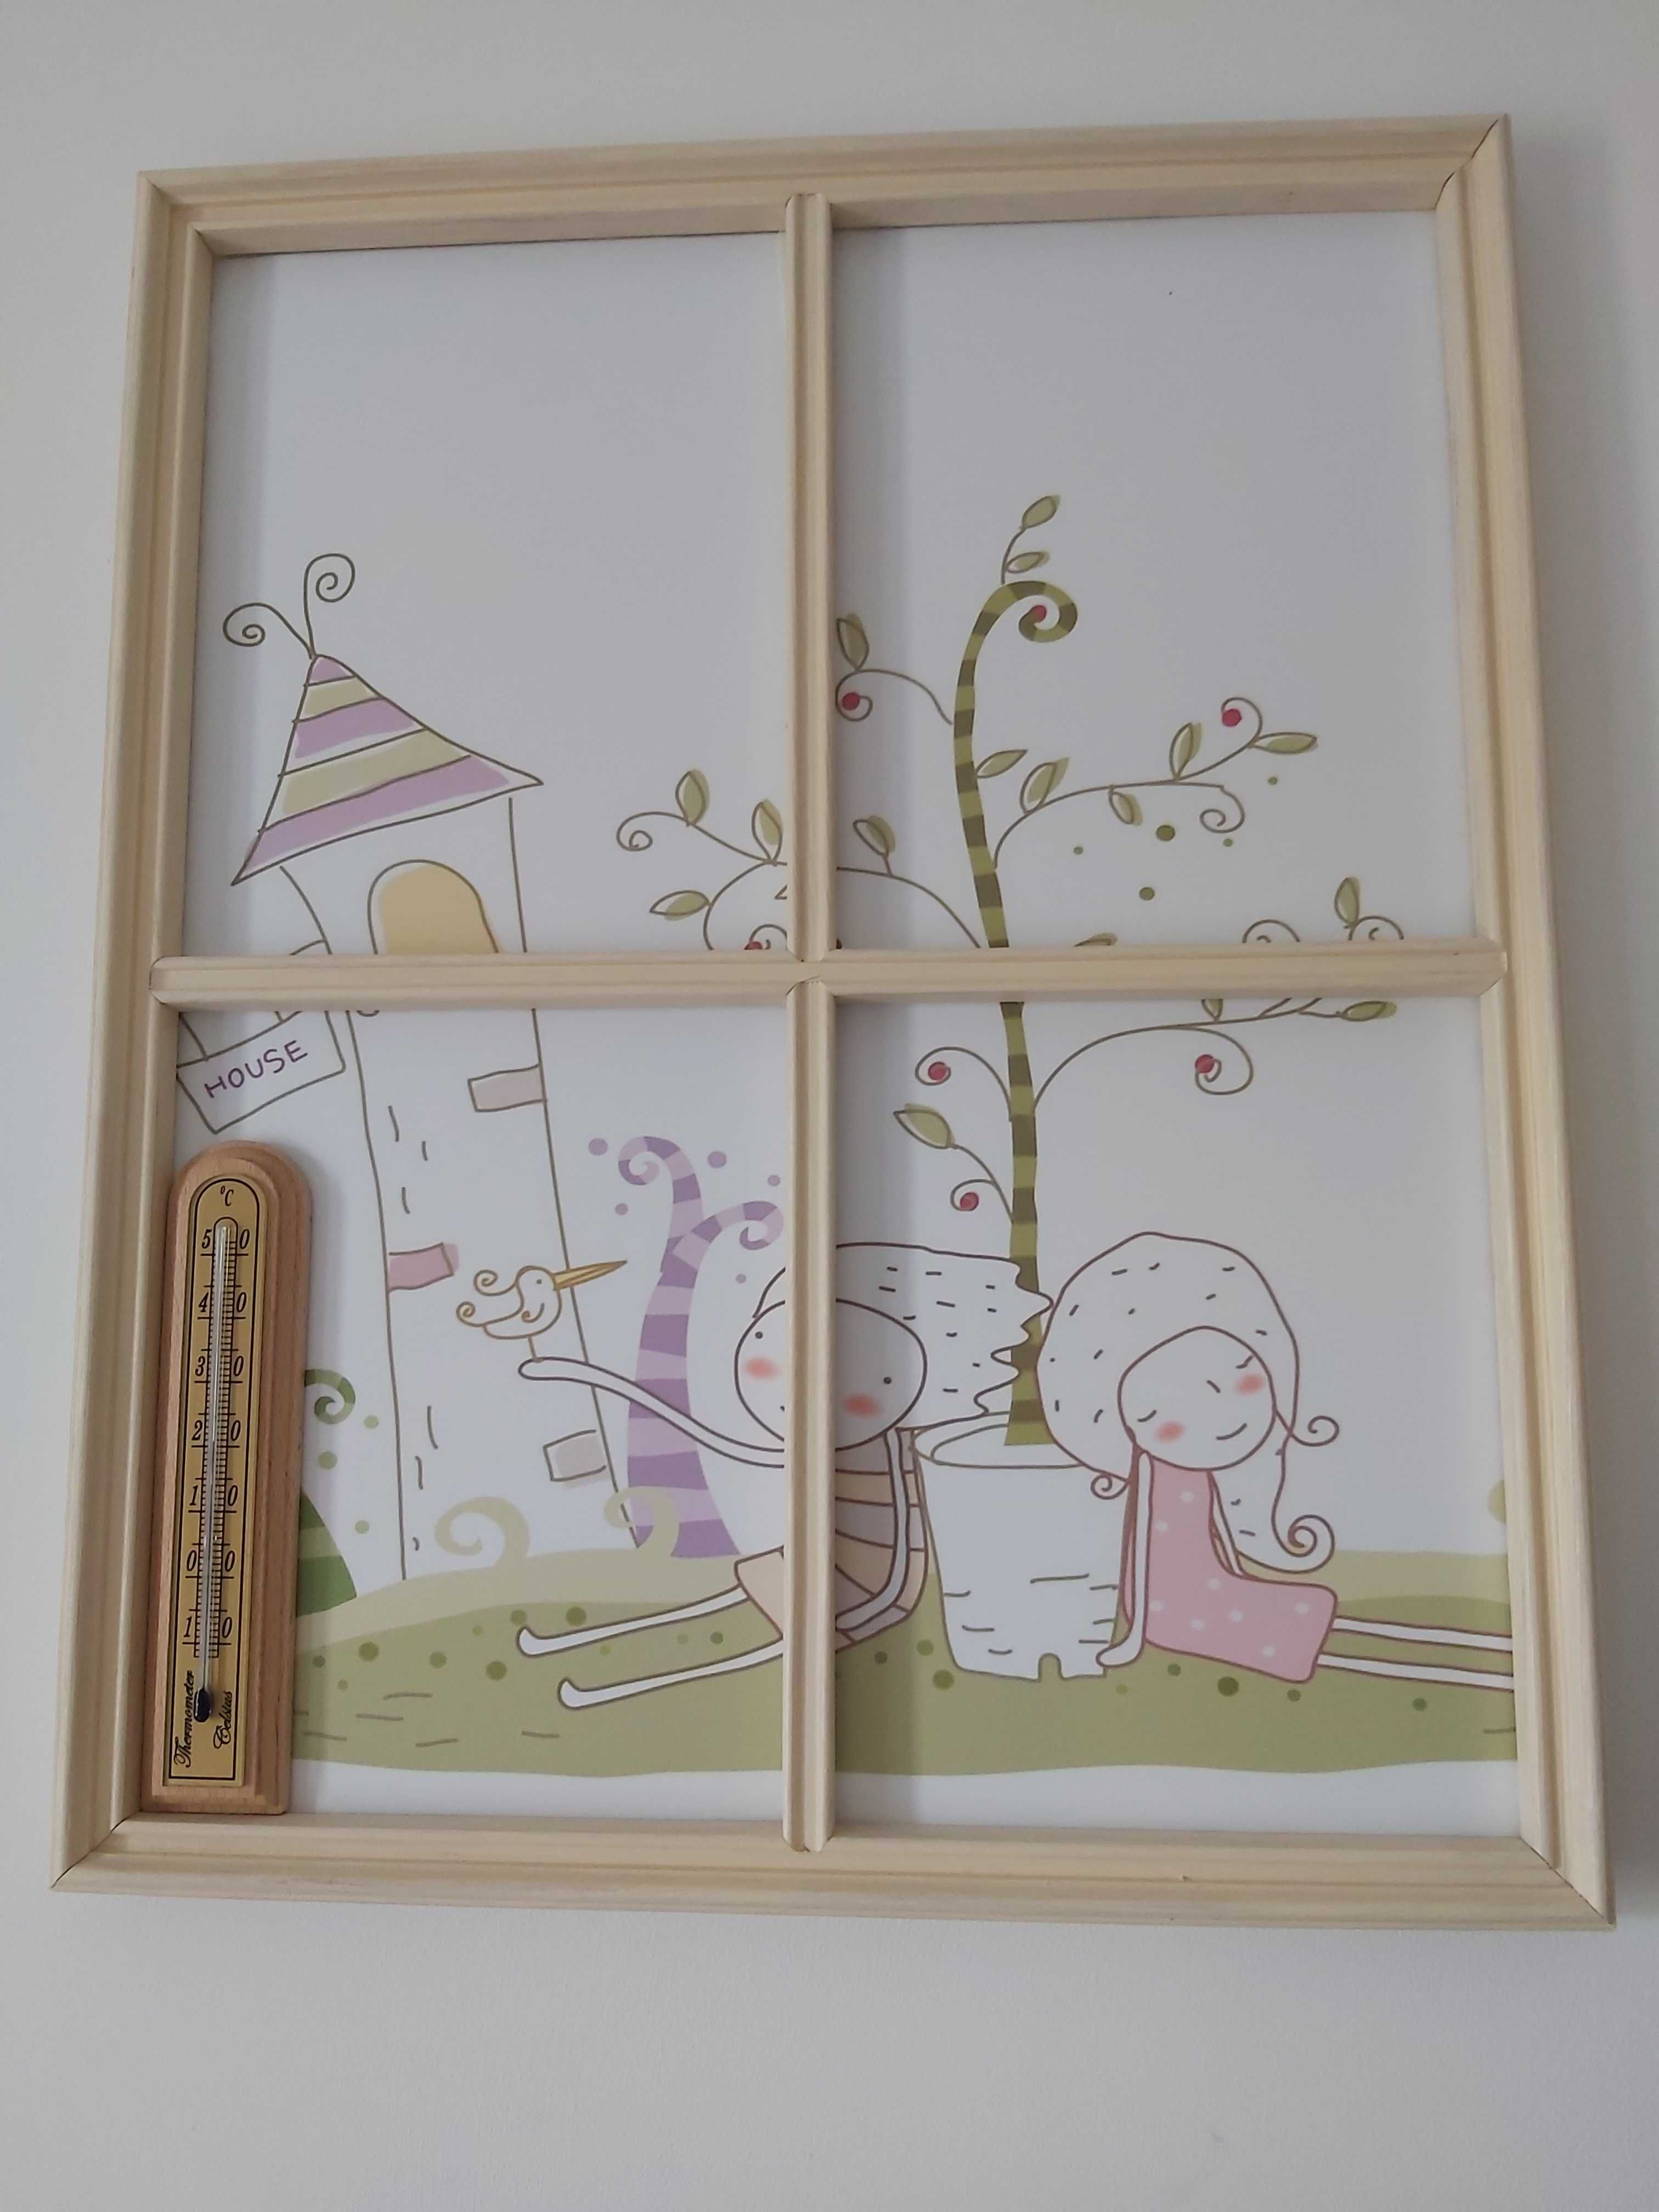 OKNA*okienka*3xobrazki do pokoju dziecka*handmade*oryginalna dekoracja